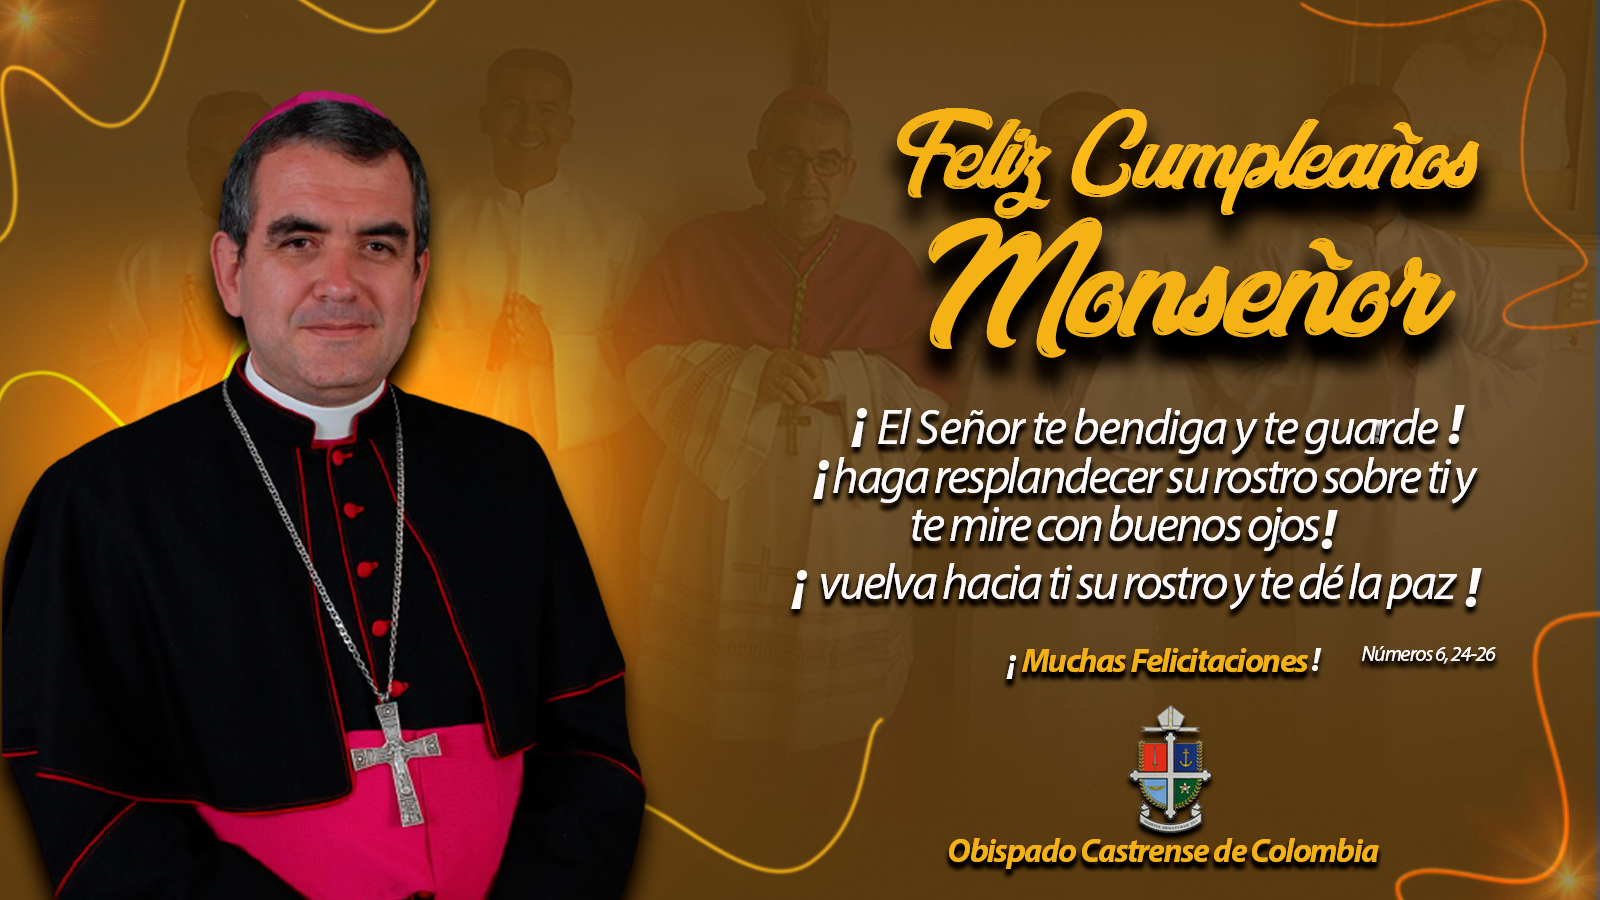 Felicitaciones A Nuestro Padre Y Pastor, Monseñor Víctor Manuel Ochoa Cadavid, En Su Cumpleaños.